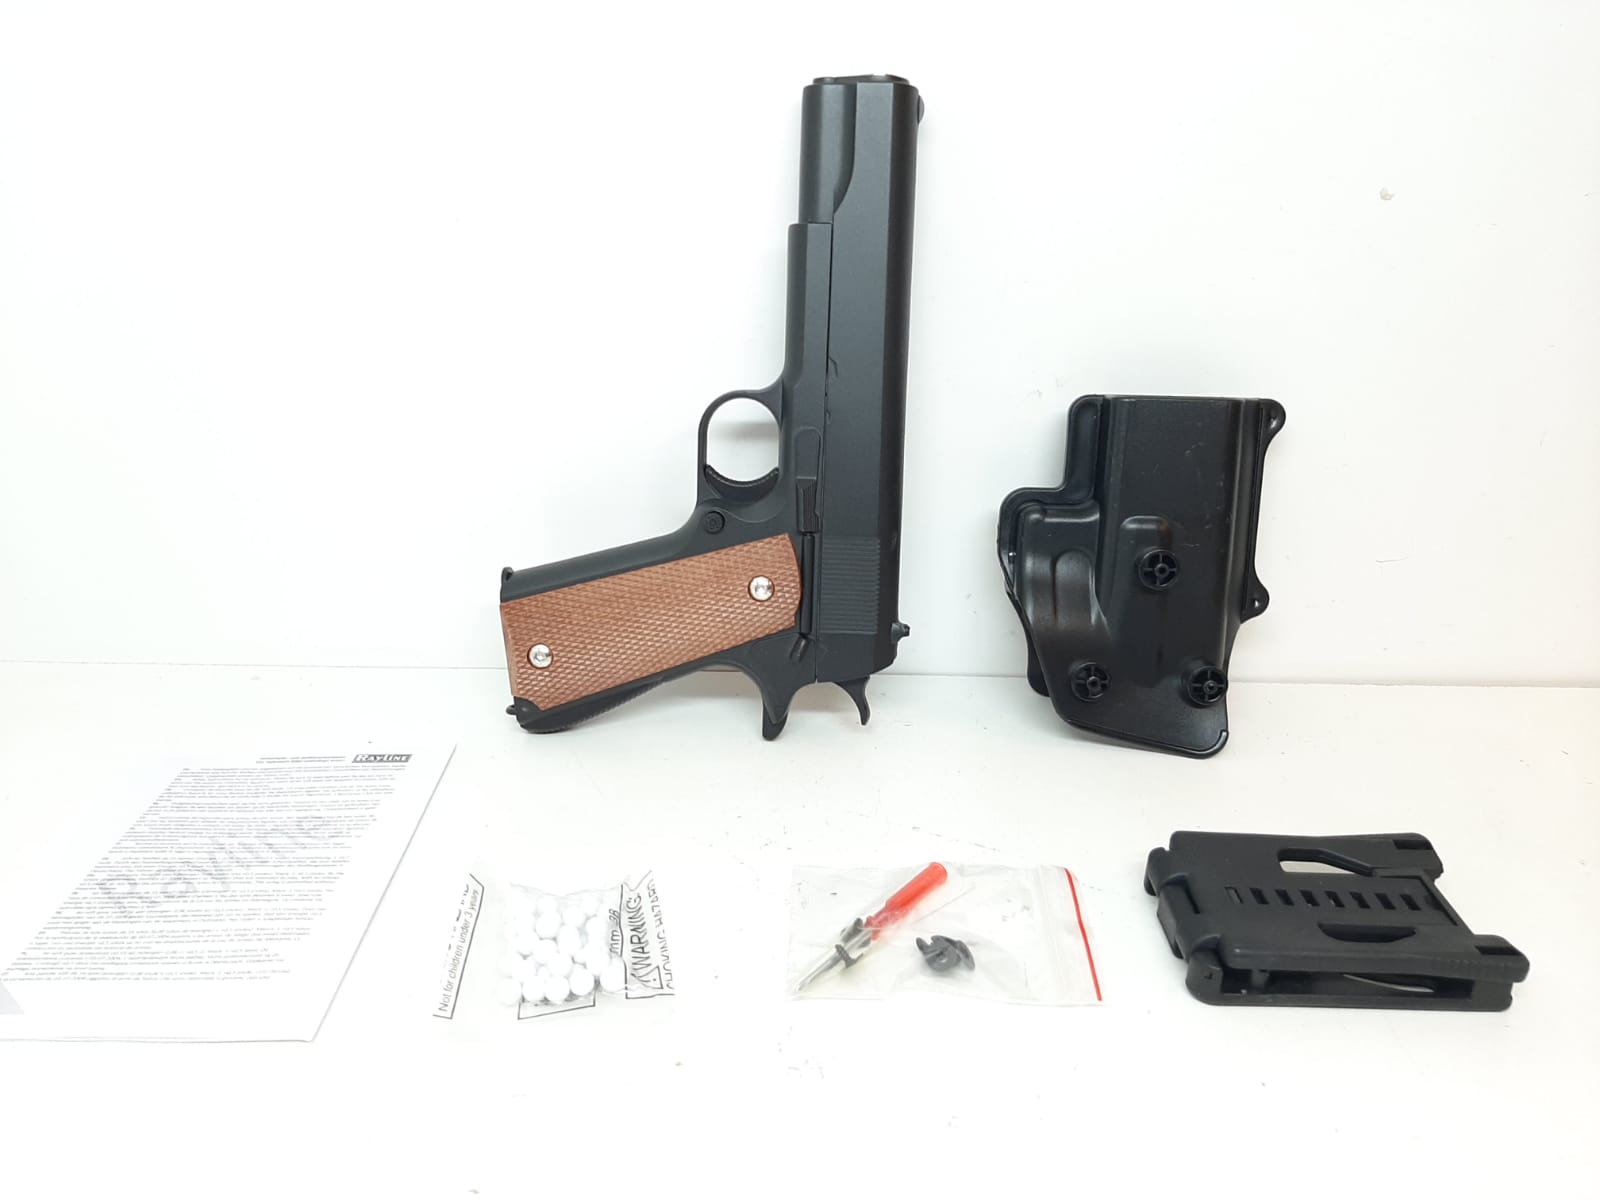 Soft Air Gun G13 PLUS - metall (Air Soft) Pistol